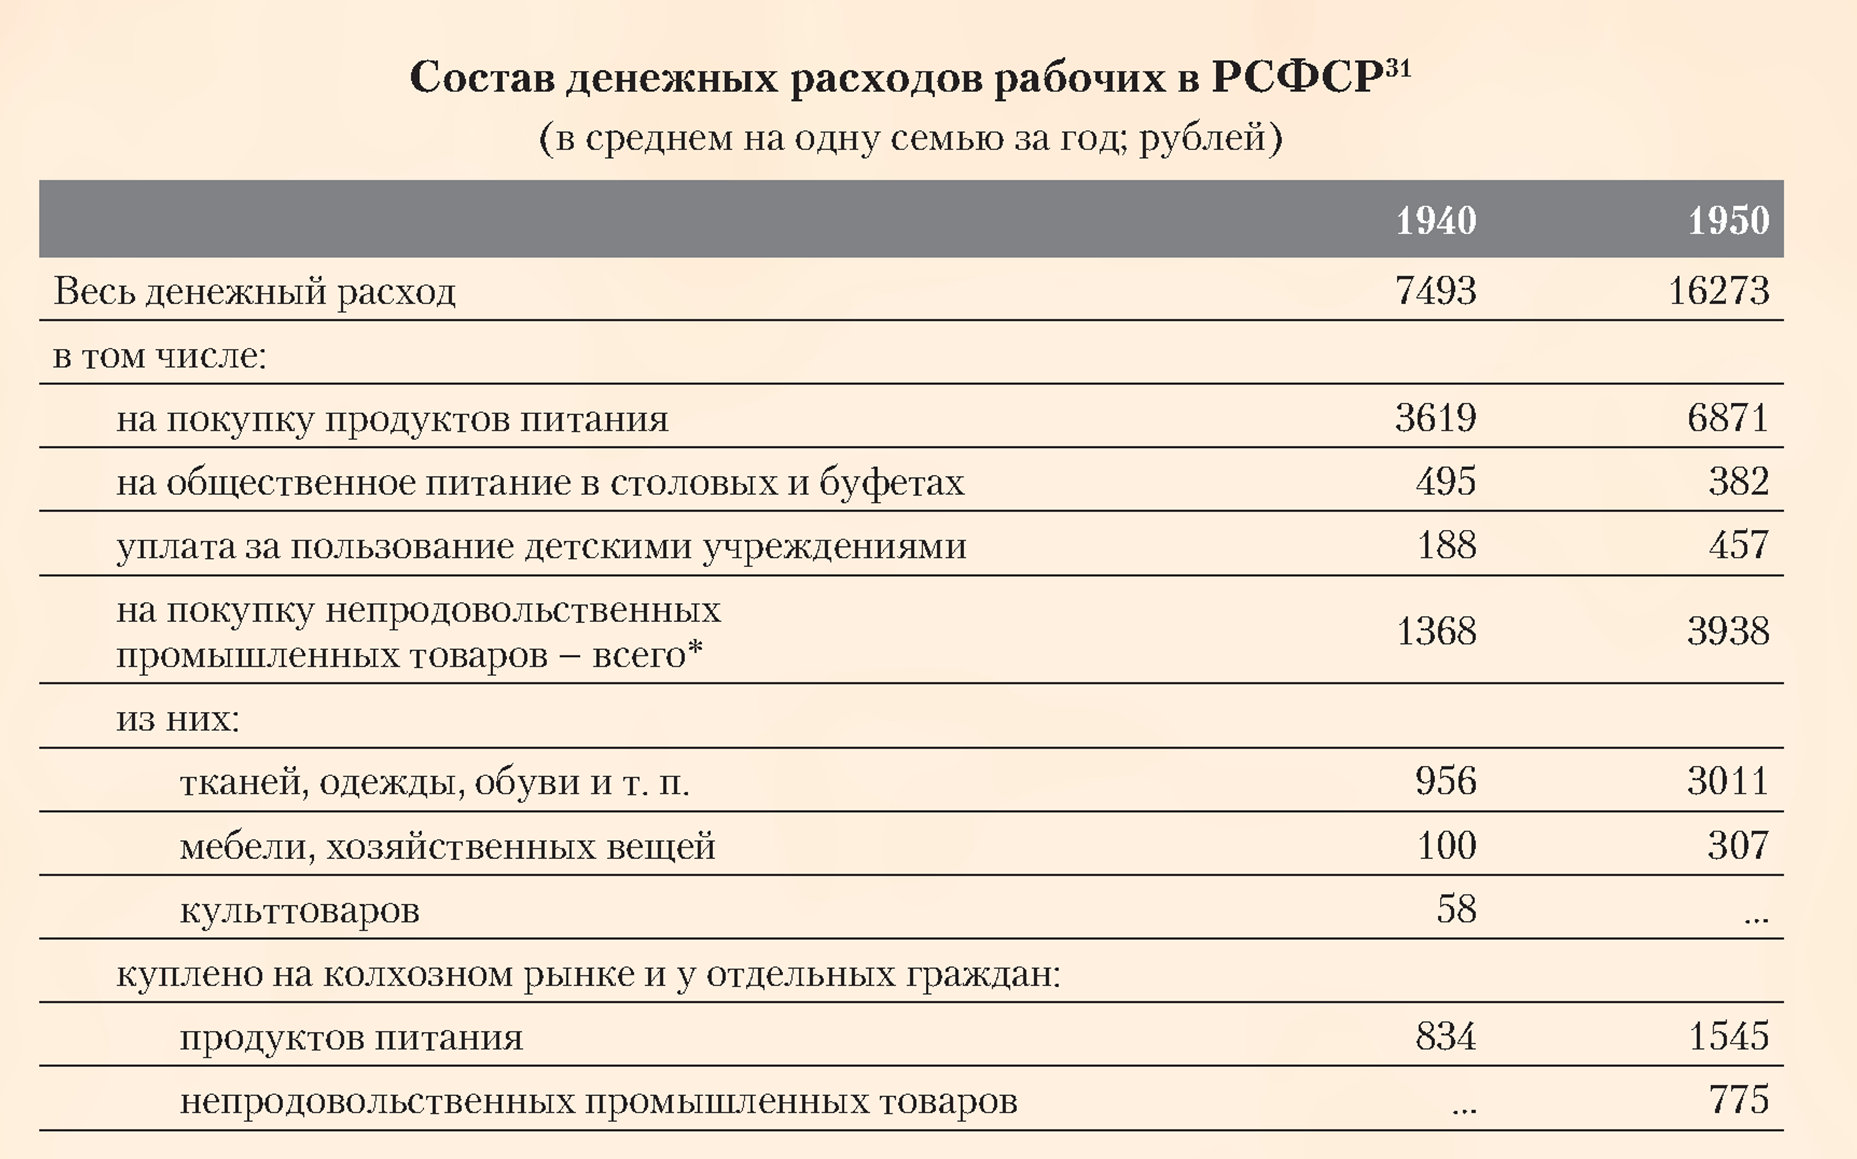 Состав денежных расходов рабочих в РСФСР